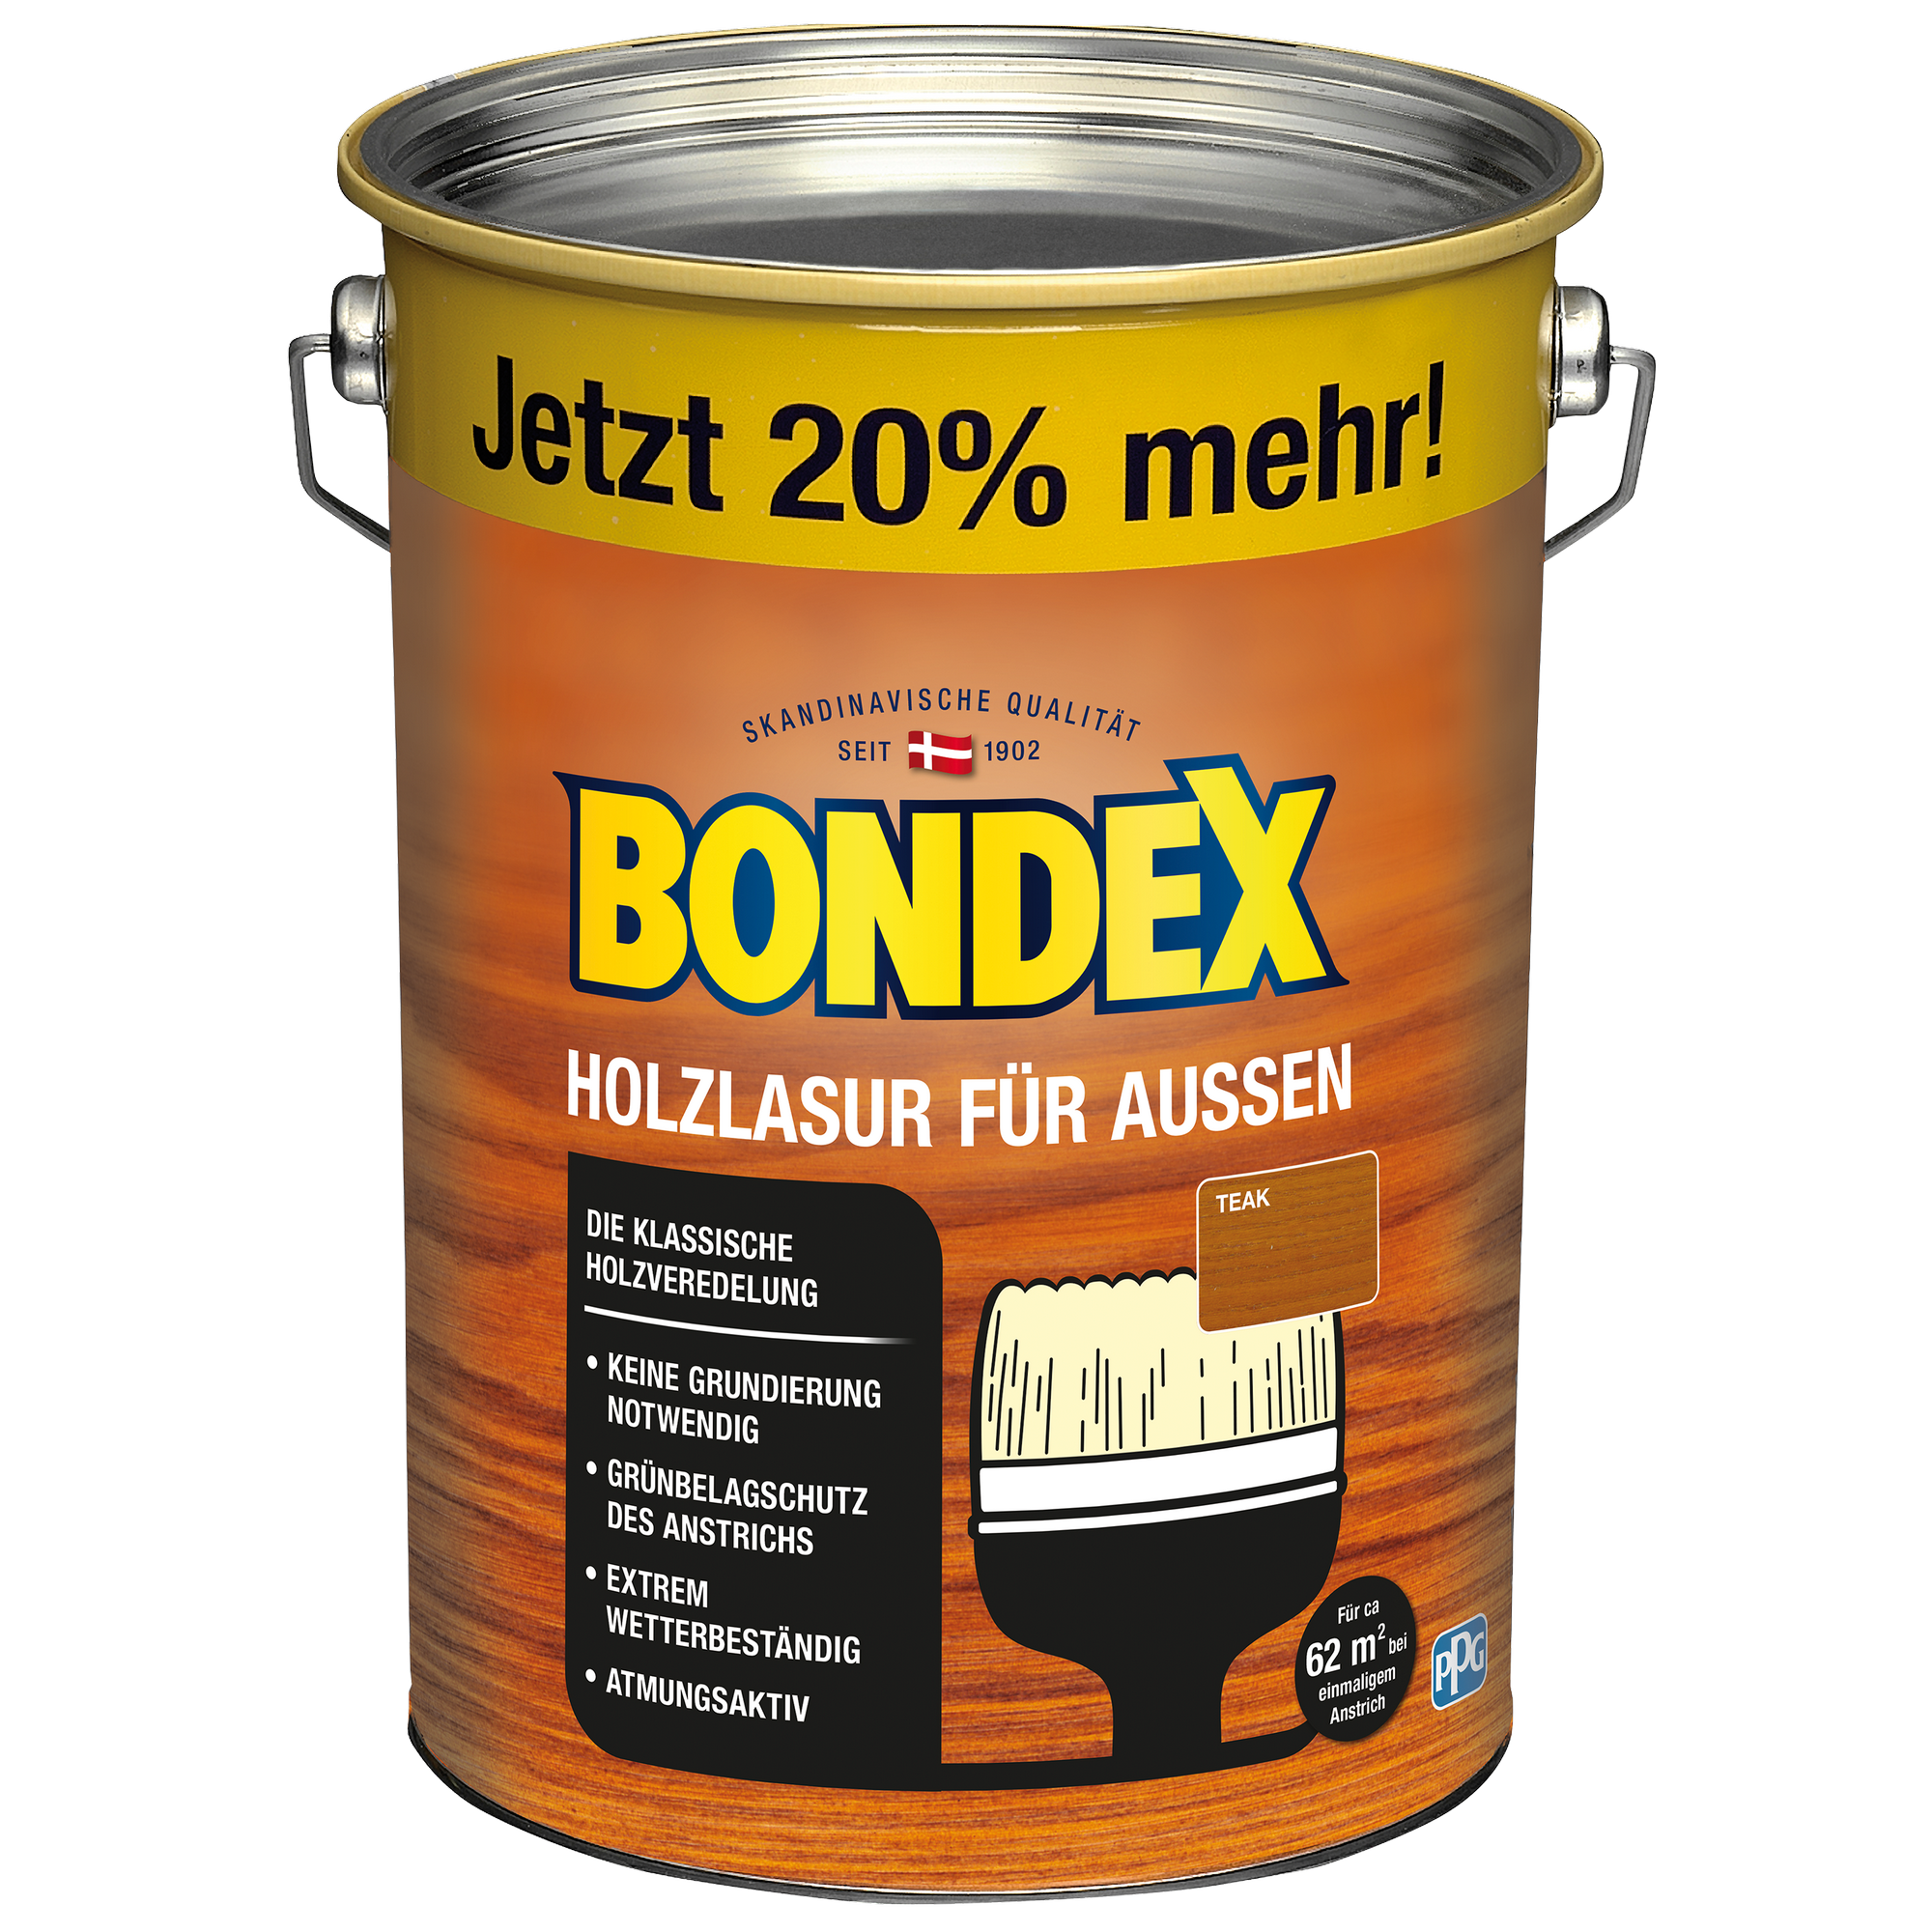 Bondex Holzlasur teakfarben 4,8 l